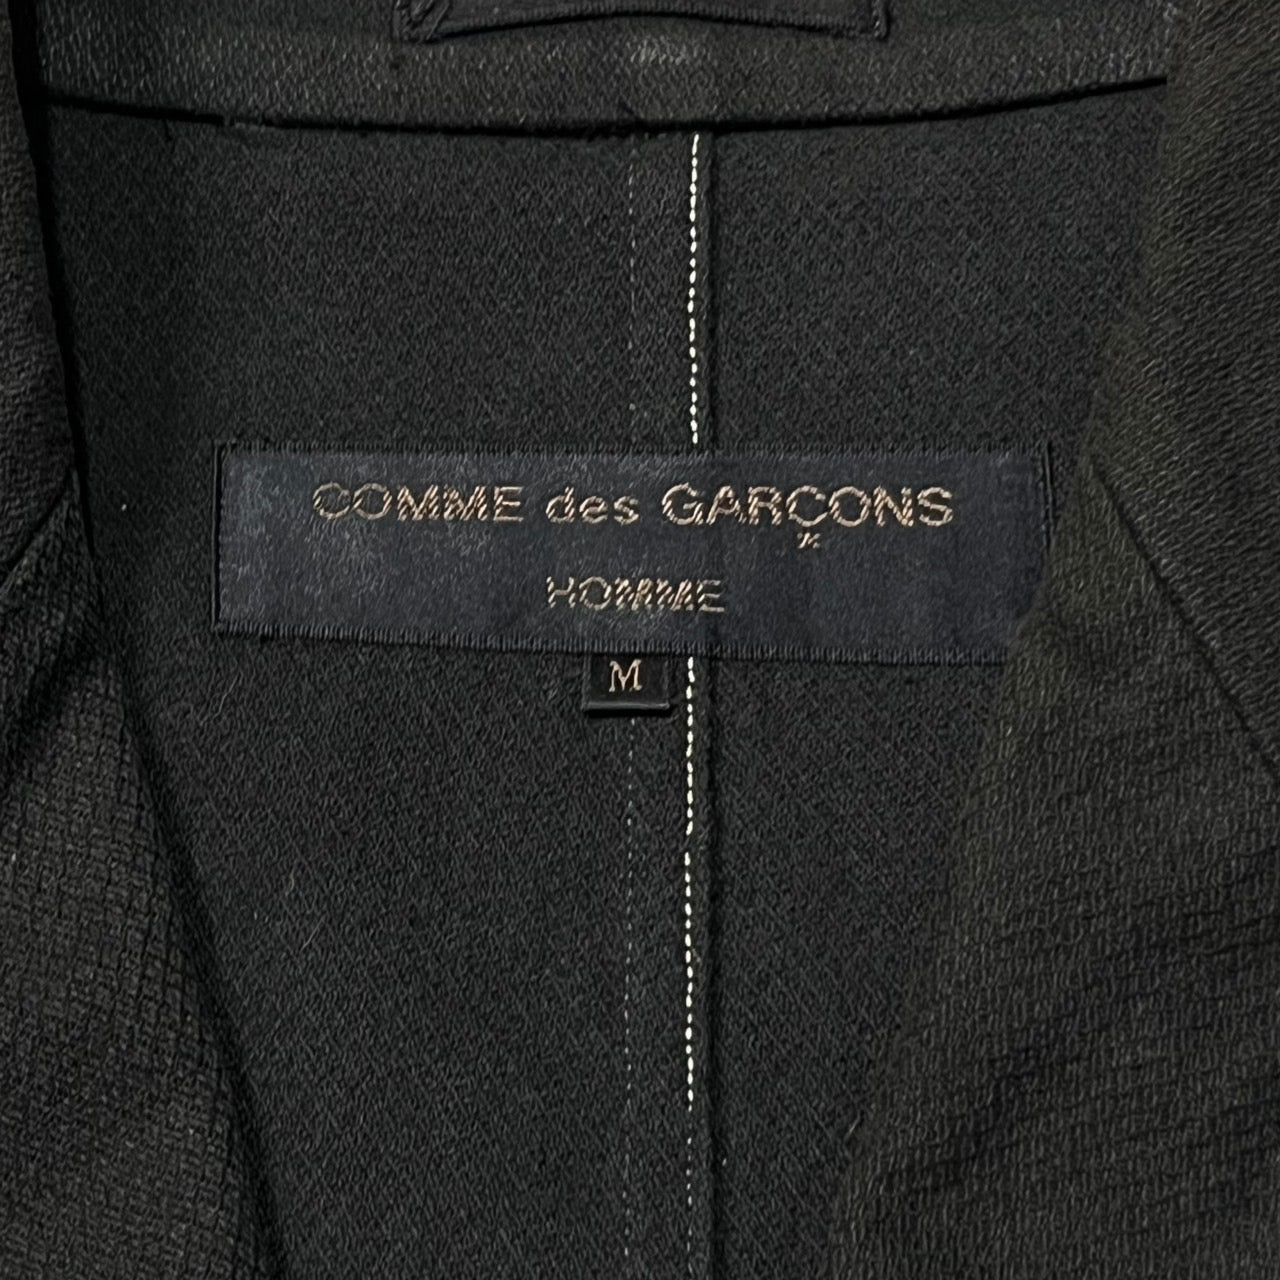 COMME des GARCONS HOMME(コムデギャルソンオム) 98AW  white stitch tailored jacket/ホワイトステッチテーラードジャケット/田中啓一/90S/90年代/ヴィンテージ HJ-04018M SIZE M ブラック×ホワイト AD1998 田中オム